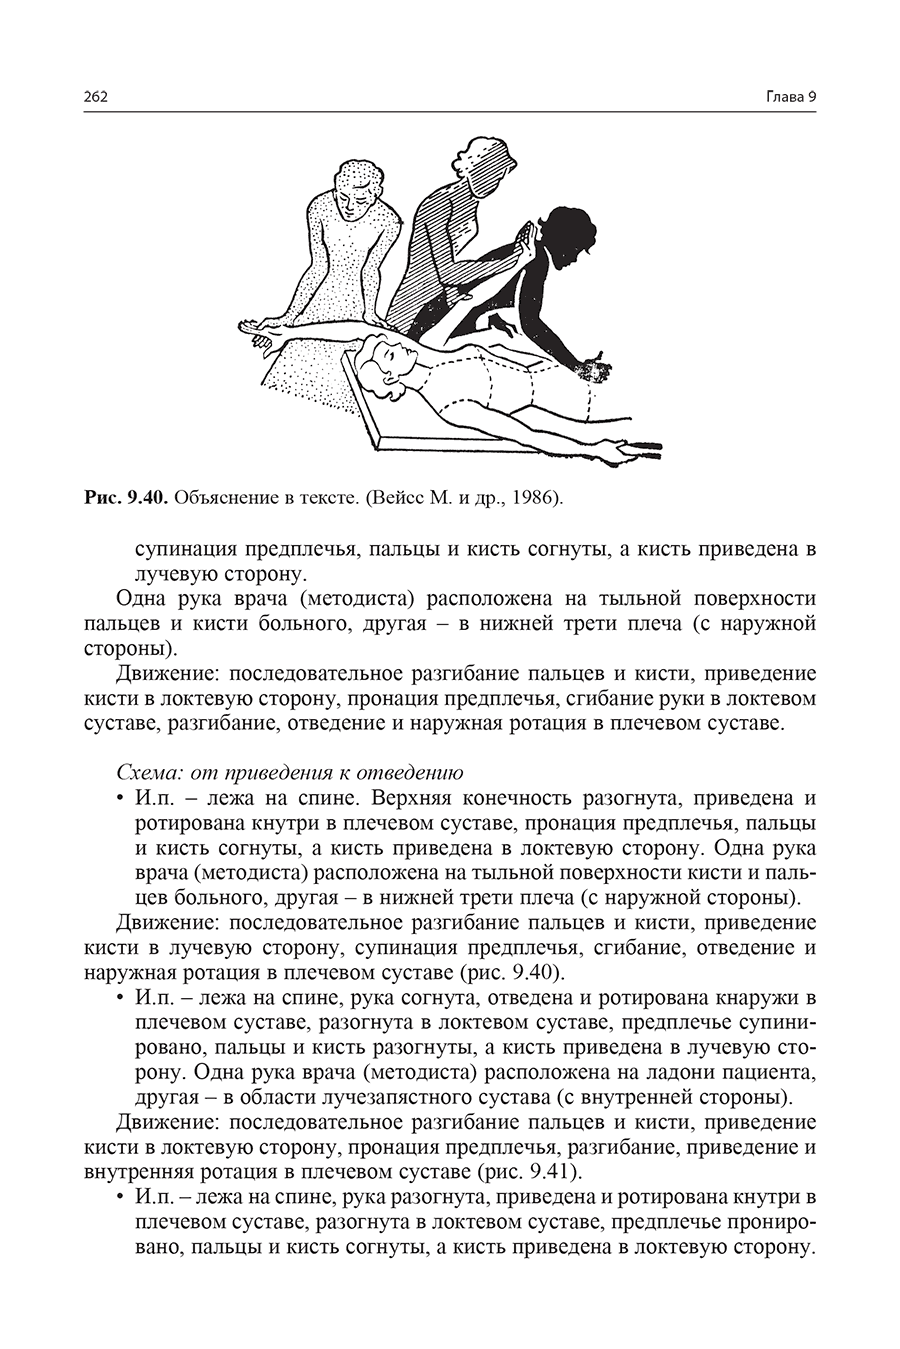 Пример страницы из книги "Реабилитация больных, перенесших инсульт" - Епифанов В. А.